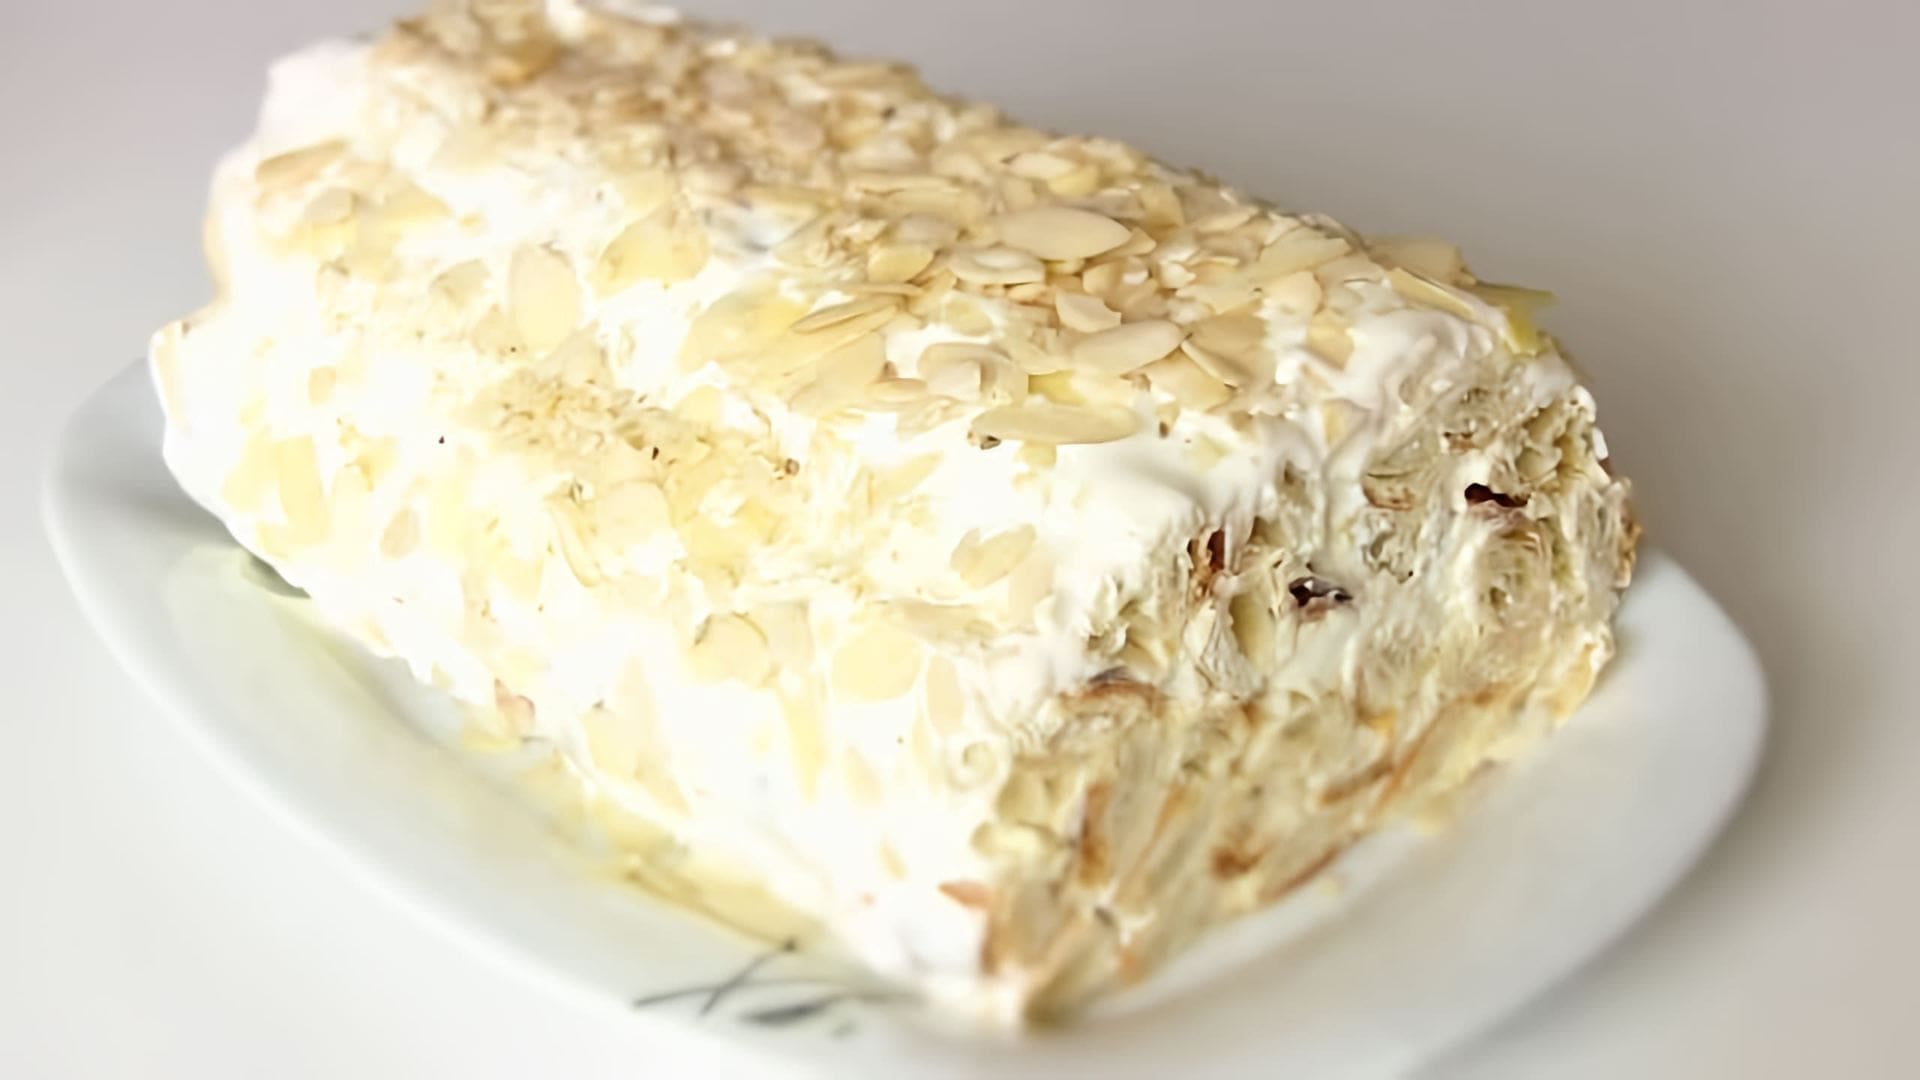 В этом видео демонстрируется процесс приготовления торта "Полено" из готового слоеного теста